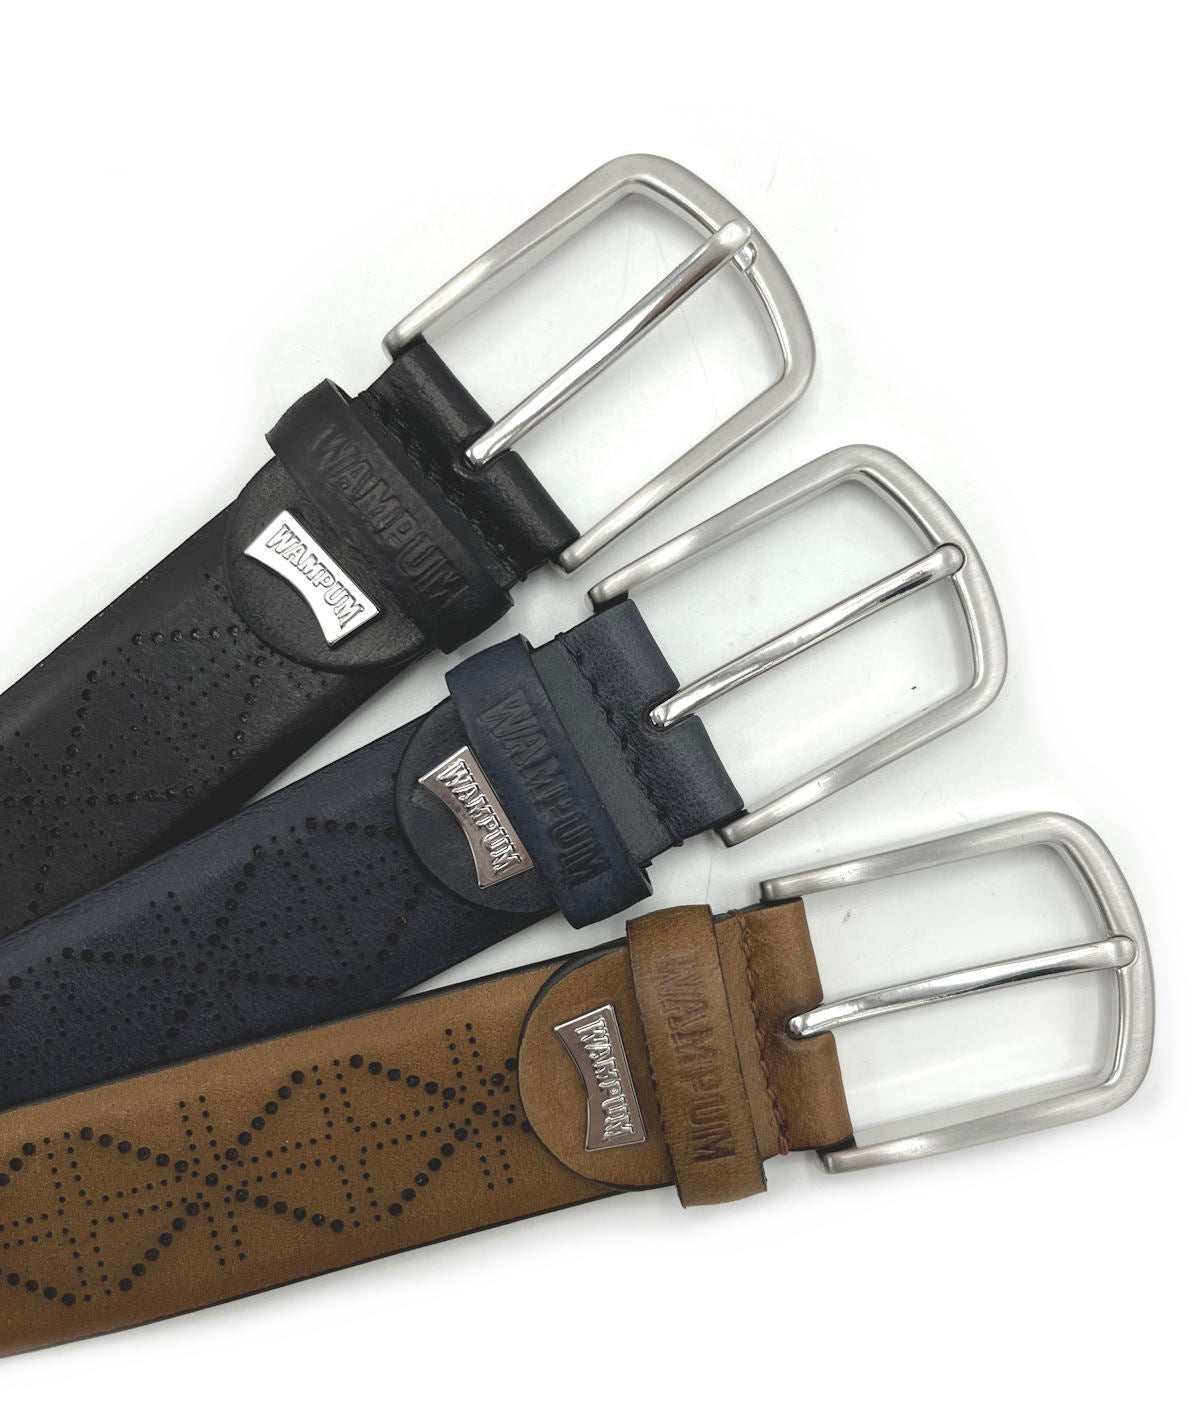 Genuine leather belt, Brand Wampum, art. DK478/35